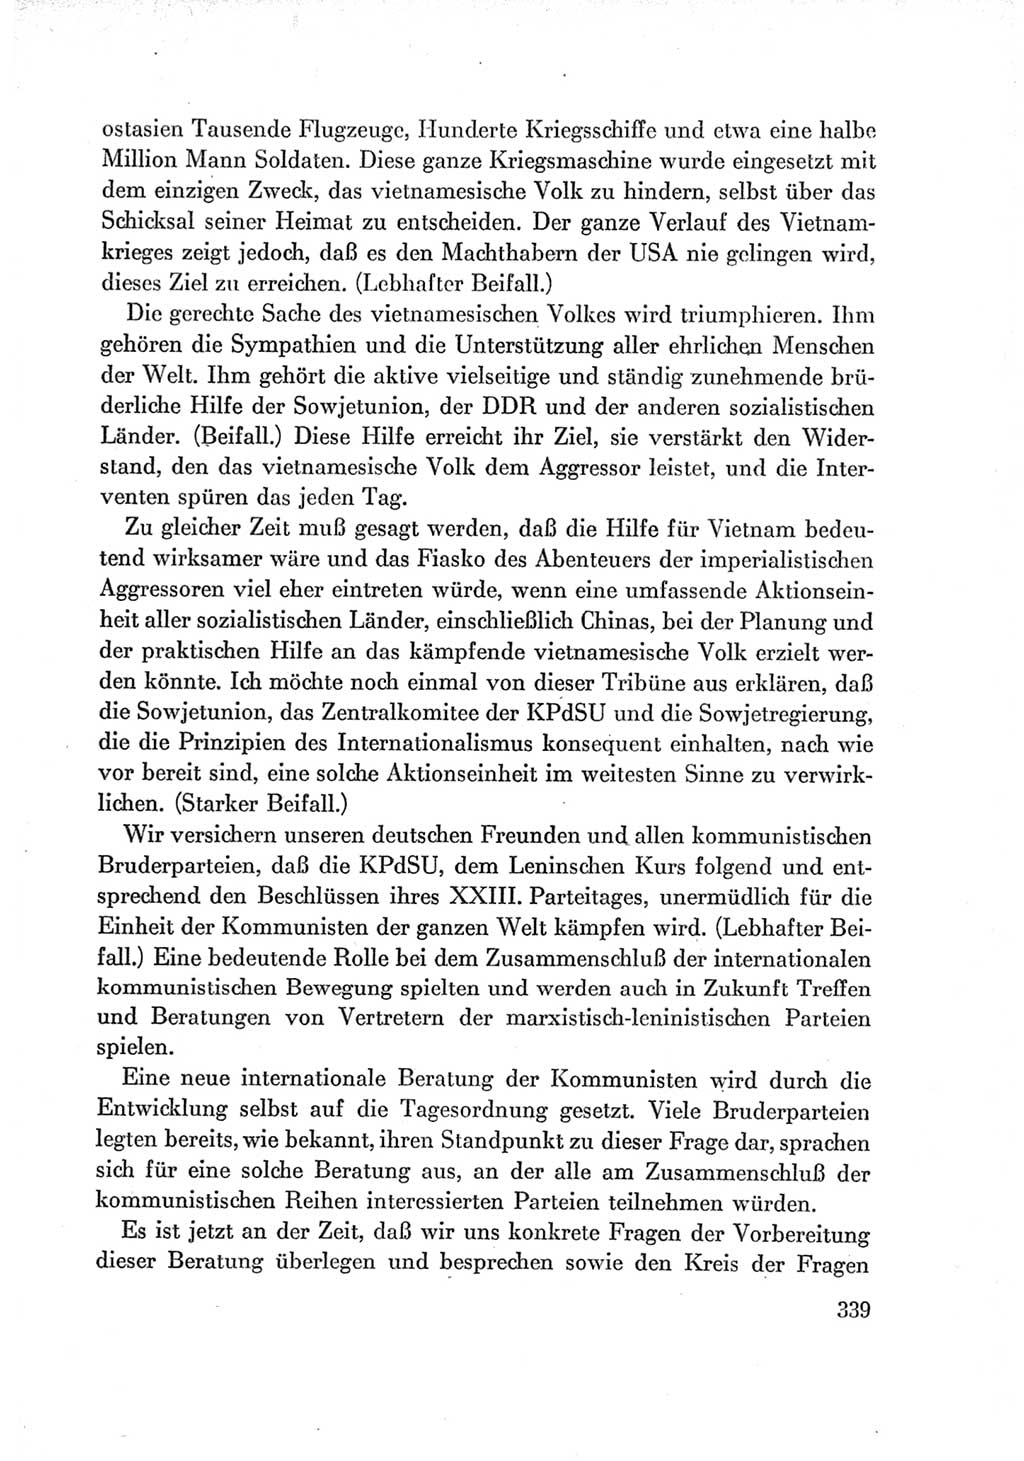 Protokoll der Verhandlungen des Ⅶ. Parteitages der Sozialistischen Einheitspartei Deutschlands (SED) [Deutsche Demokratische Republik (DDR)] 1967, Band Ⅰ, Seite 339 (Prot. Verh. Ⅶ. PT SED DDR 1967, Bd. Ⅰ, S. 339)